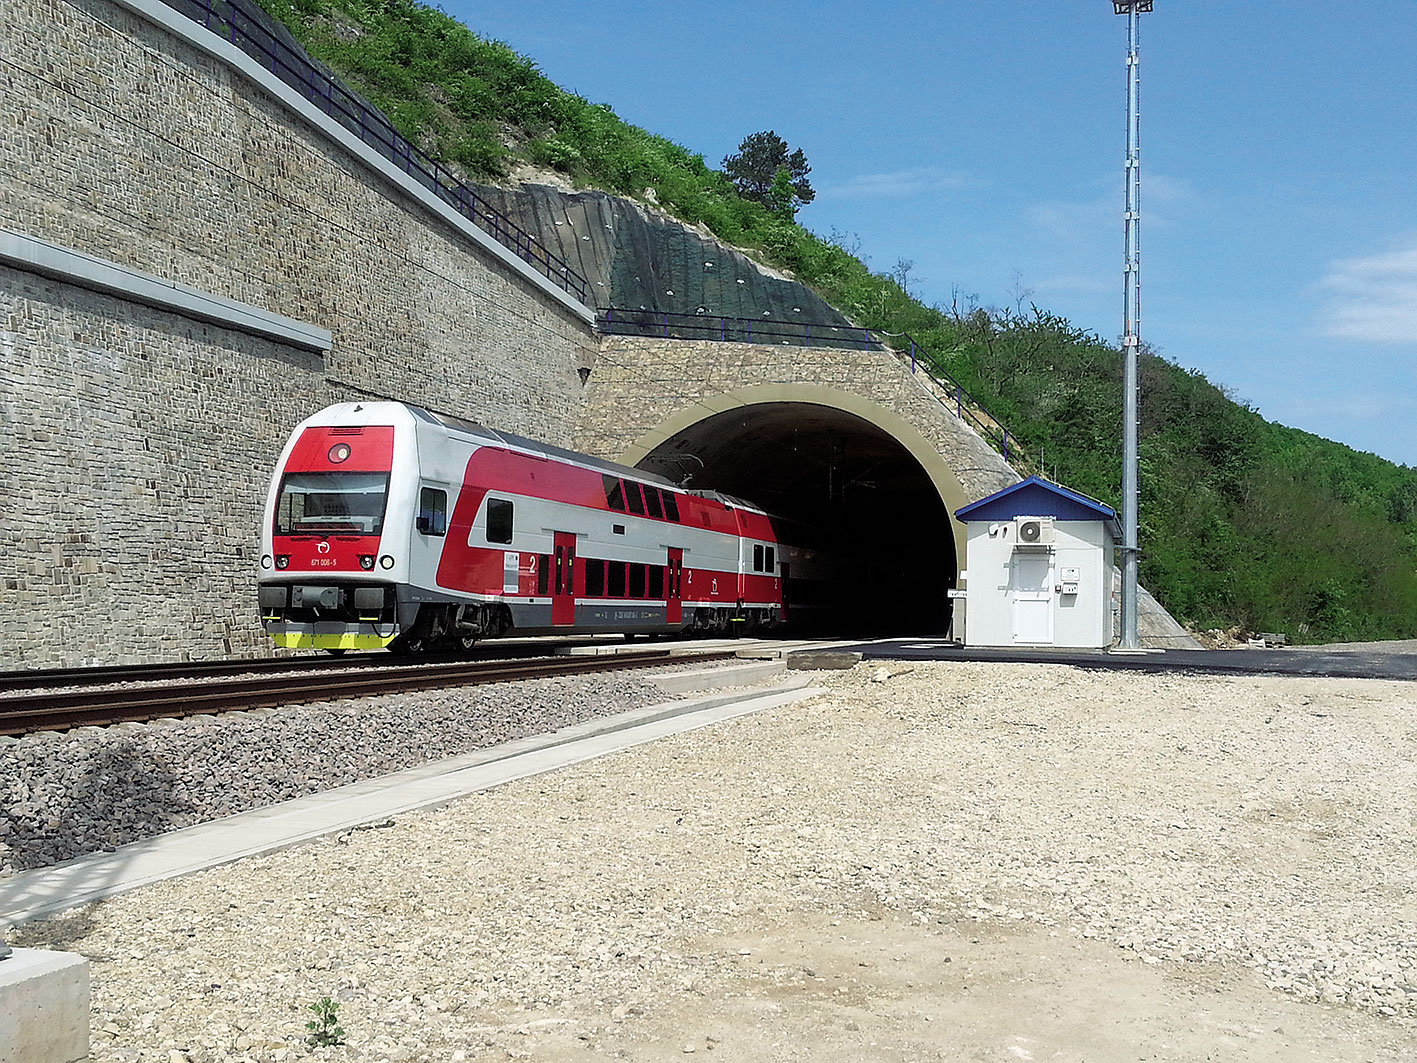 zeleznicny tunel turecky vrch 7469 big image